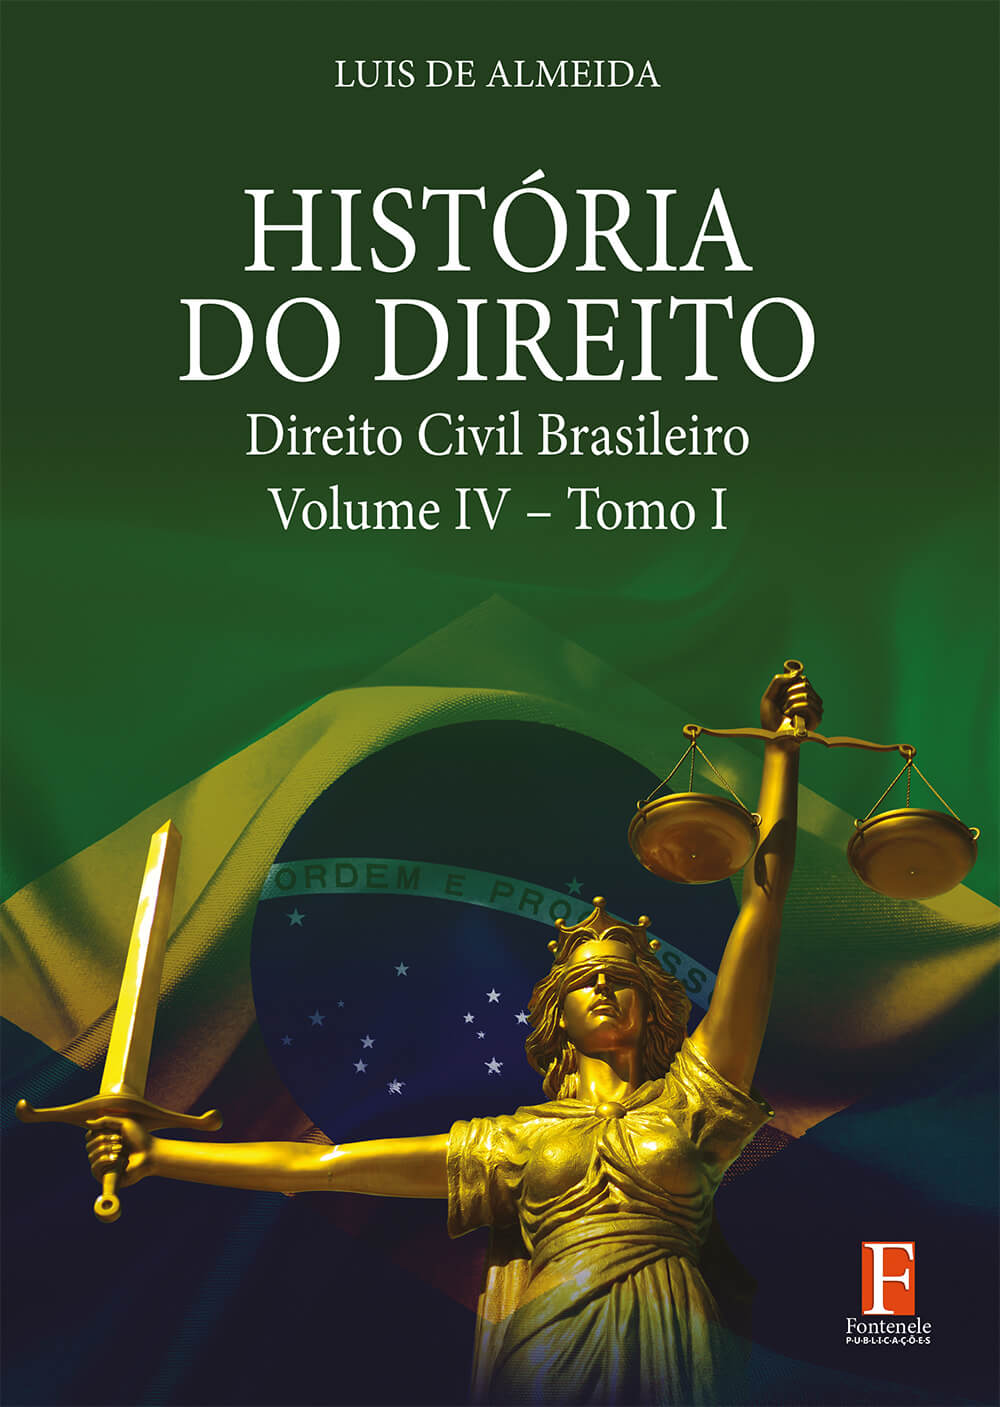 Fontenele Publicações / 11 95150-3481 / 11  95150-4383 Direito - História do Direito – Direito Civil Brasileiro – Volume IV – Tomo I